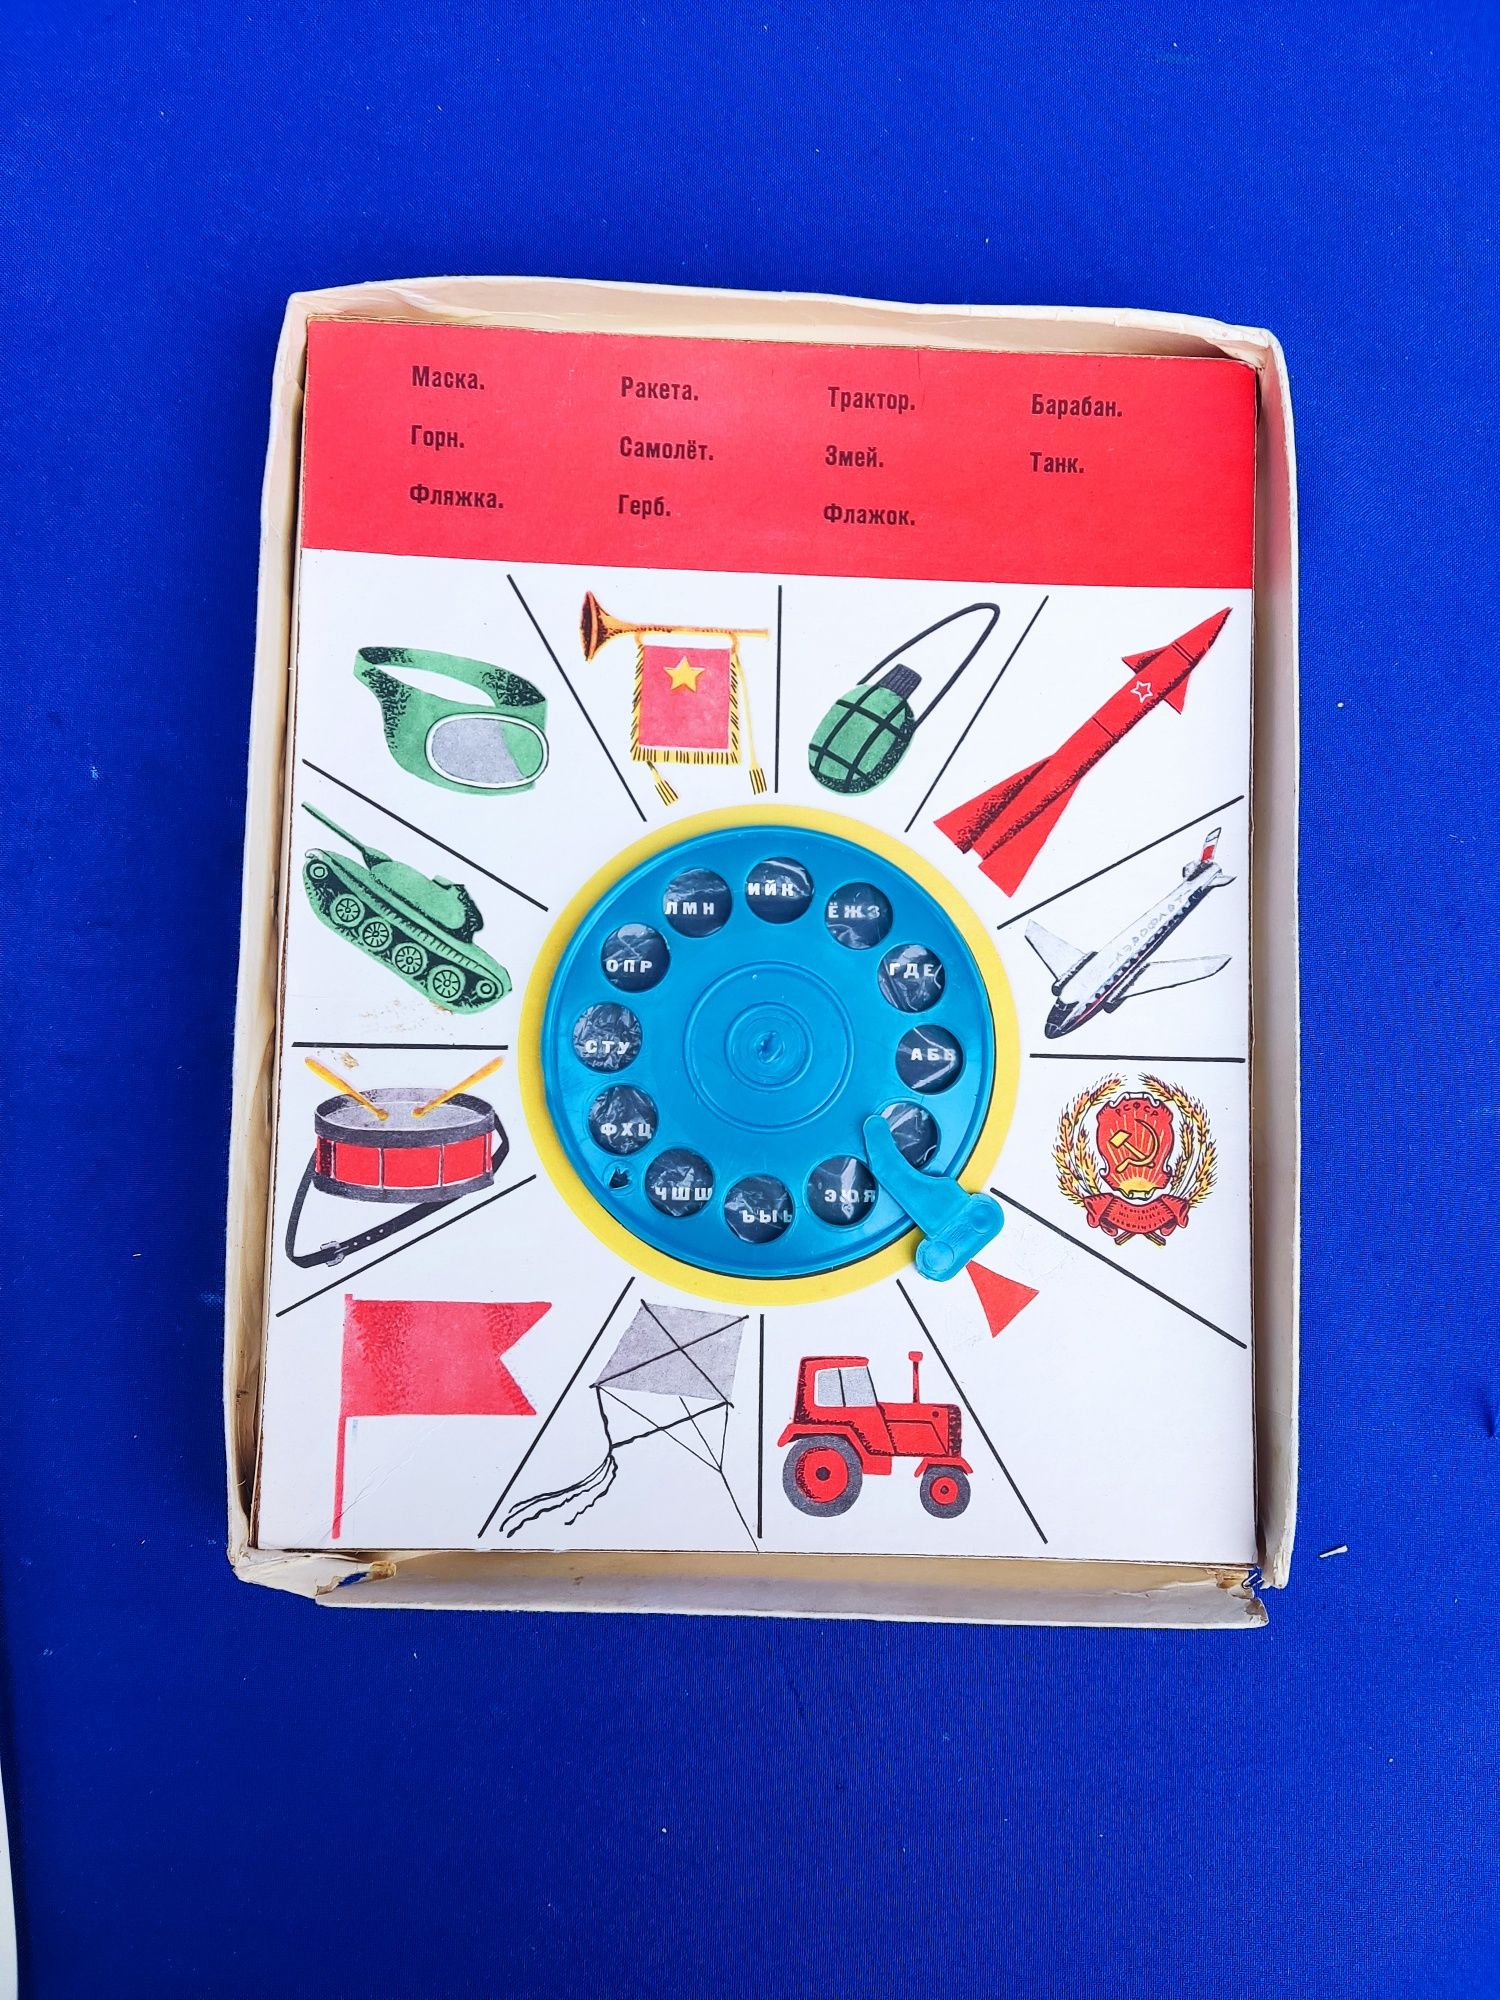 Детская розвивающая игра для детей времён СССР советская умный телефон